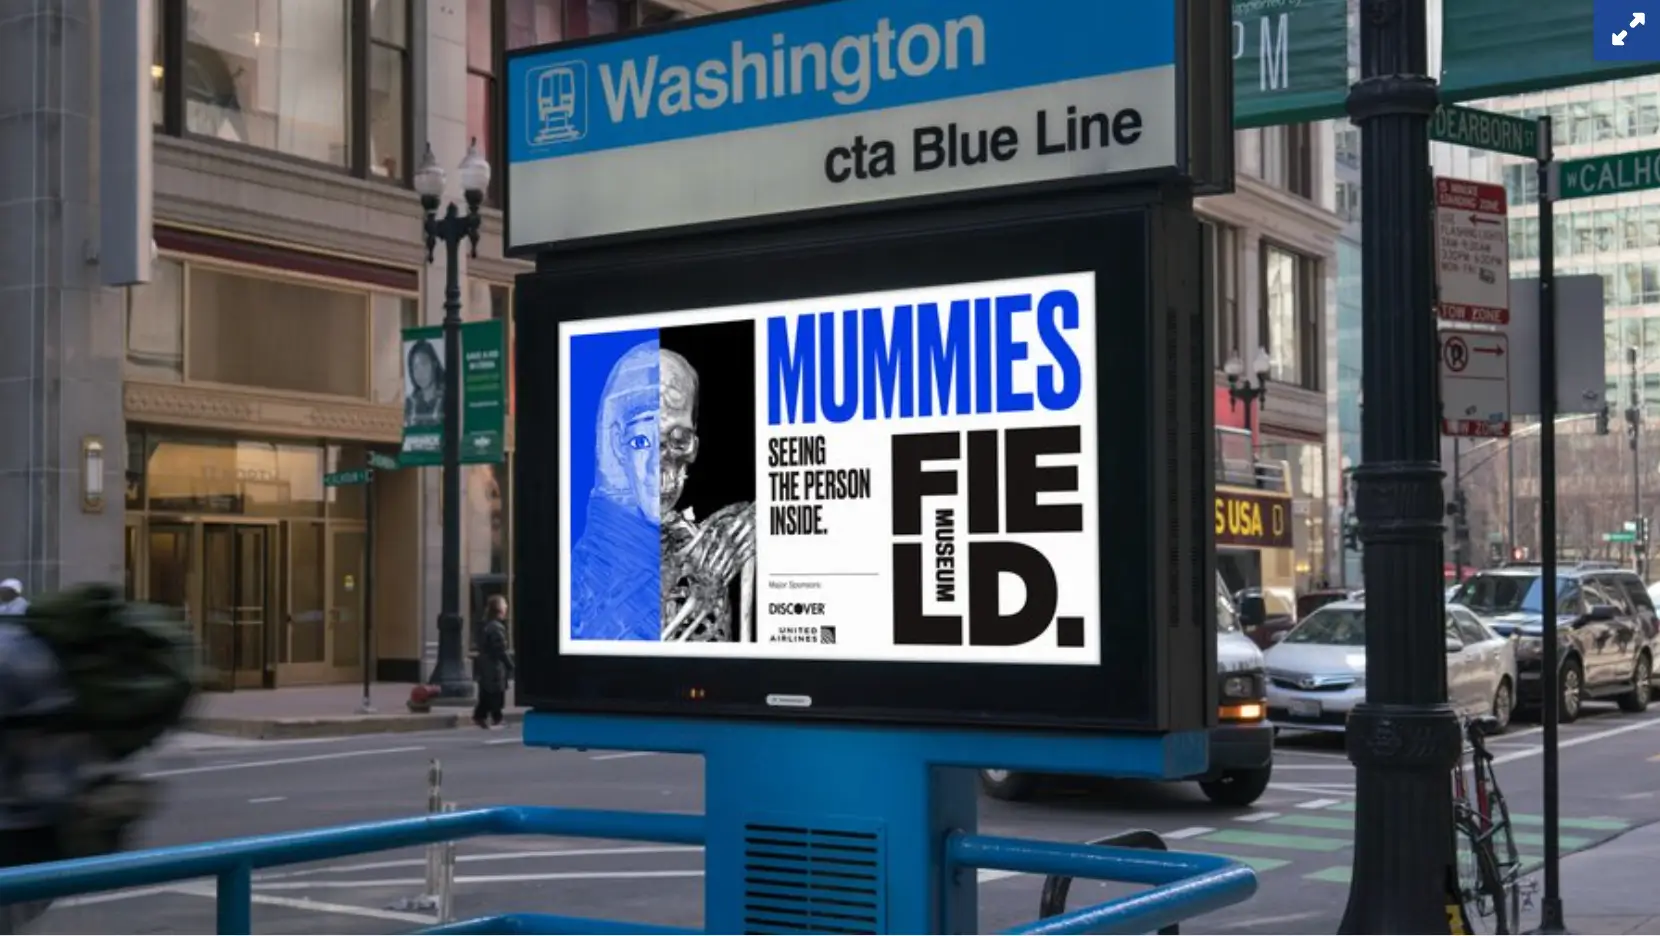 Questa immagine mostra la campagna del Field Museum di Chicago per la mostra sulla mummia del 2018, che unisce la pubblicità tradizionale con i contenuti dei social media per generare interesse e attirare visitatori al museo.